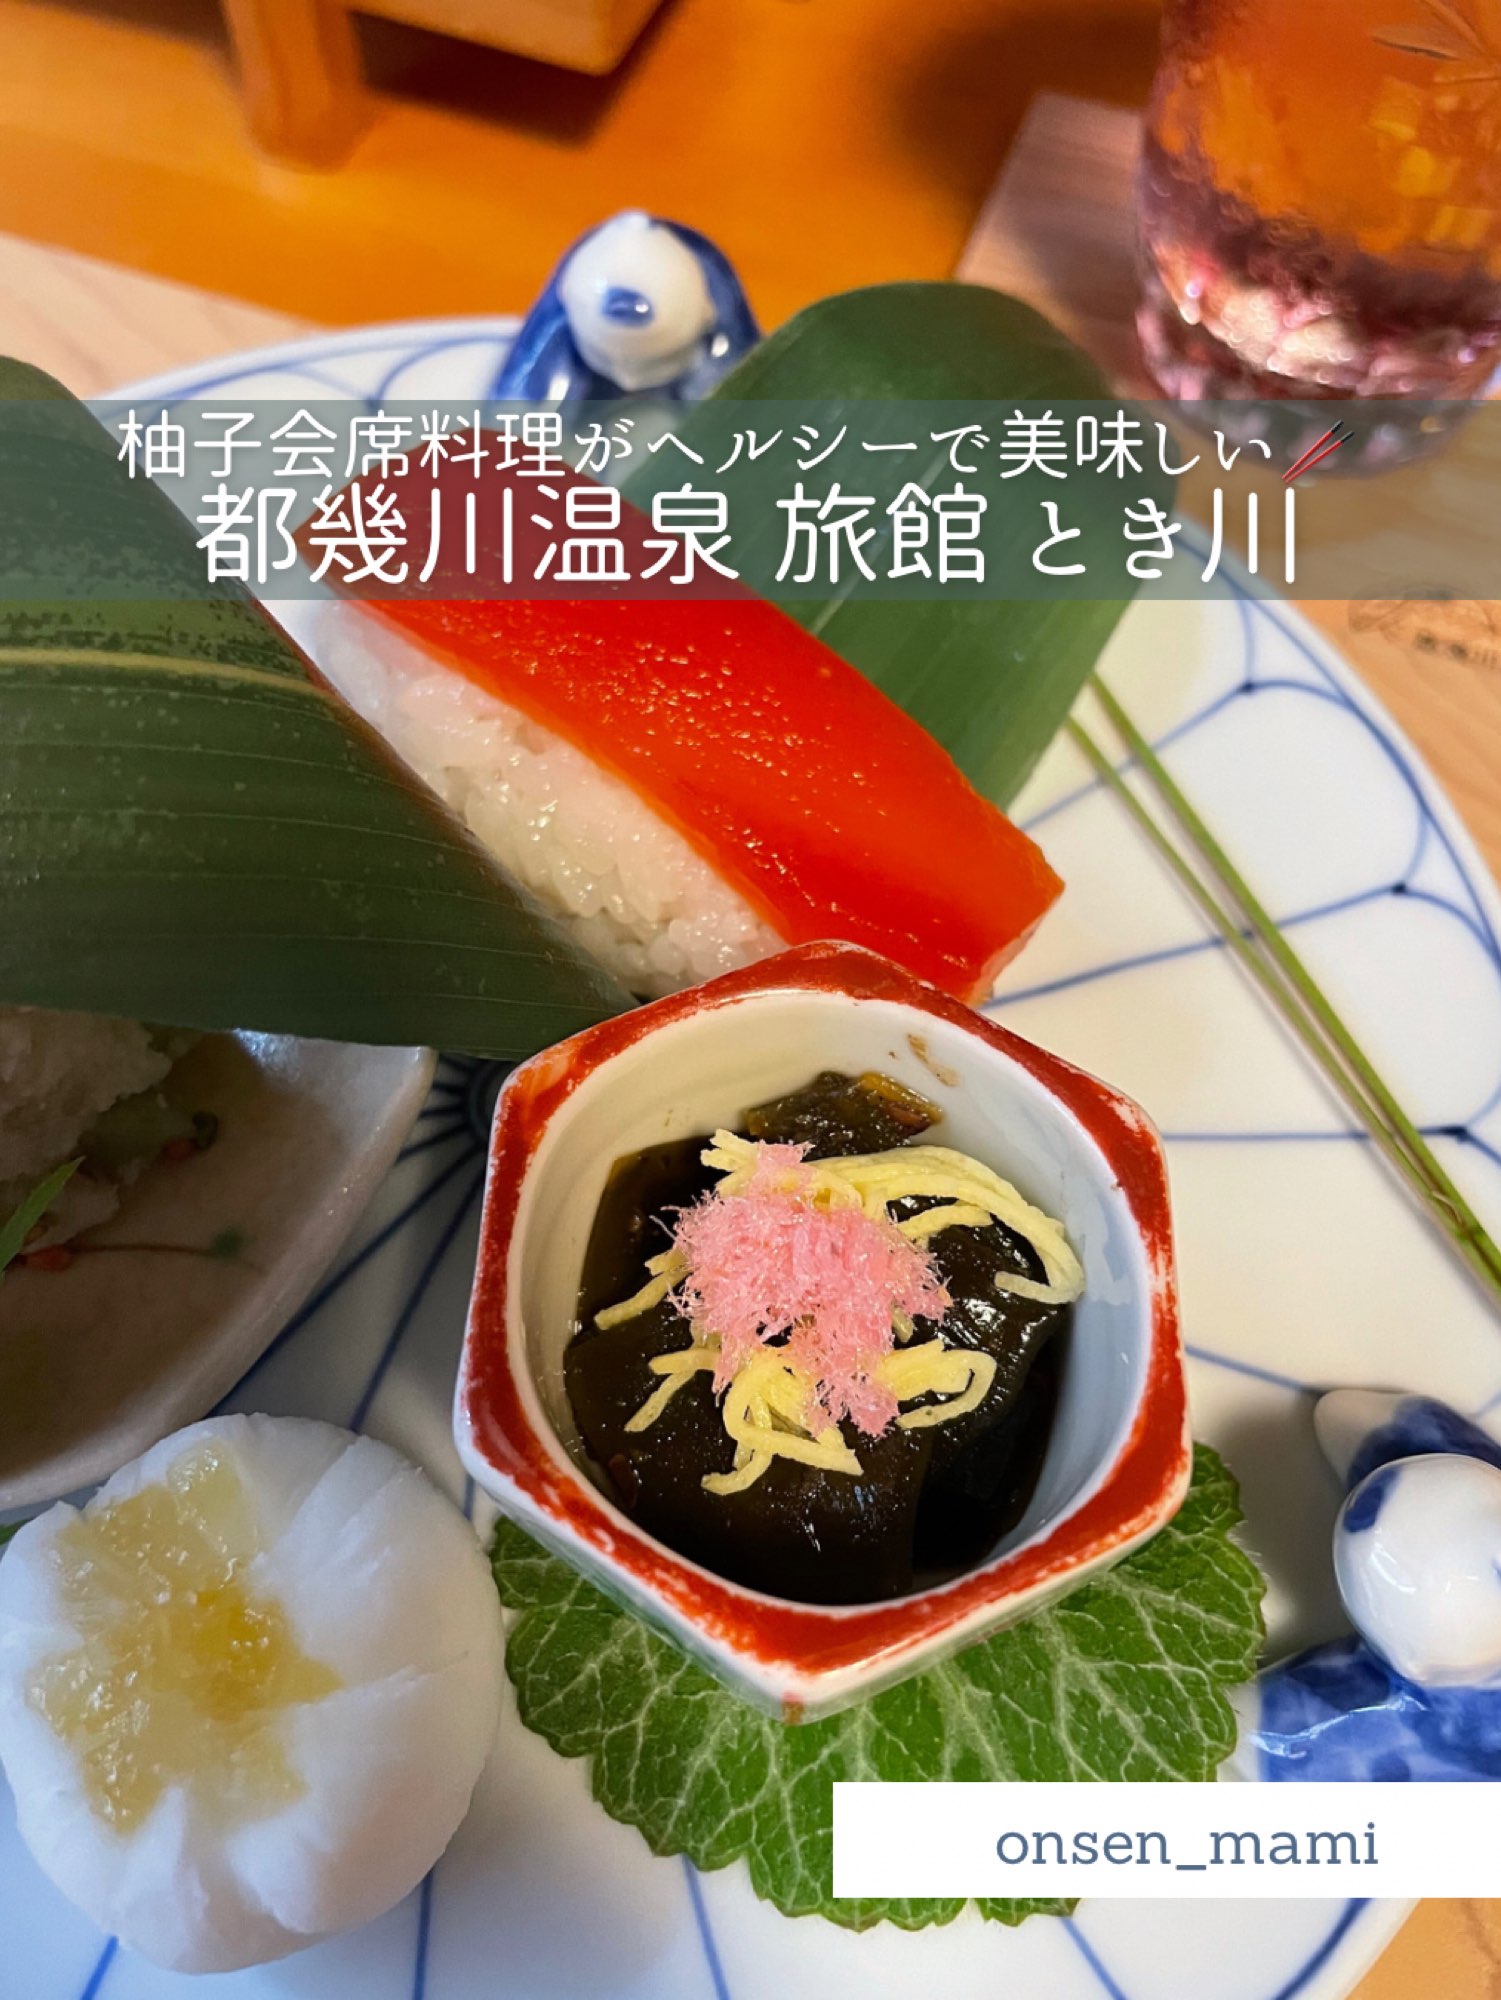 [埼玉都生川温泉]不仅是温泉!一日游温泉旅馆,您可以在这里品尝美味的柚子怀石料理♨️